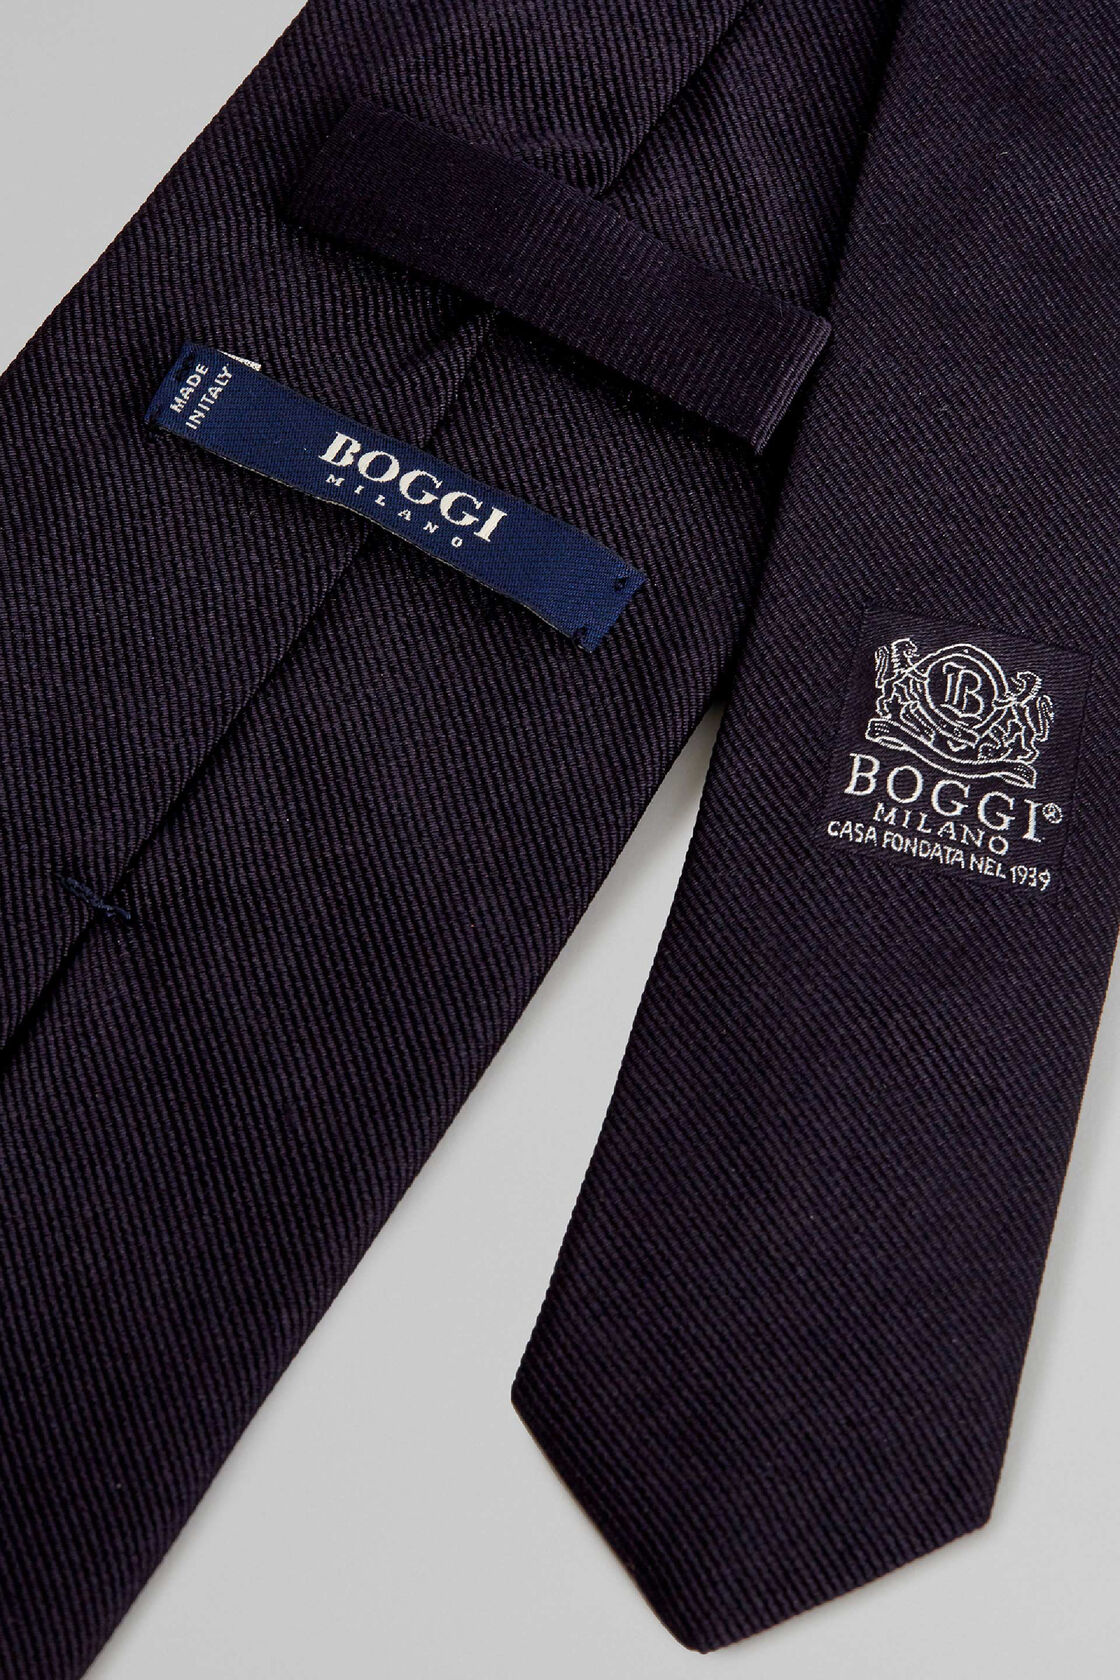 Boggi krawatte - Die TOP Produkte unter allen Boggi krawatte